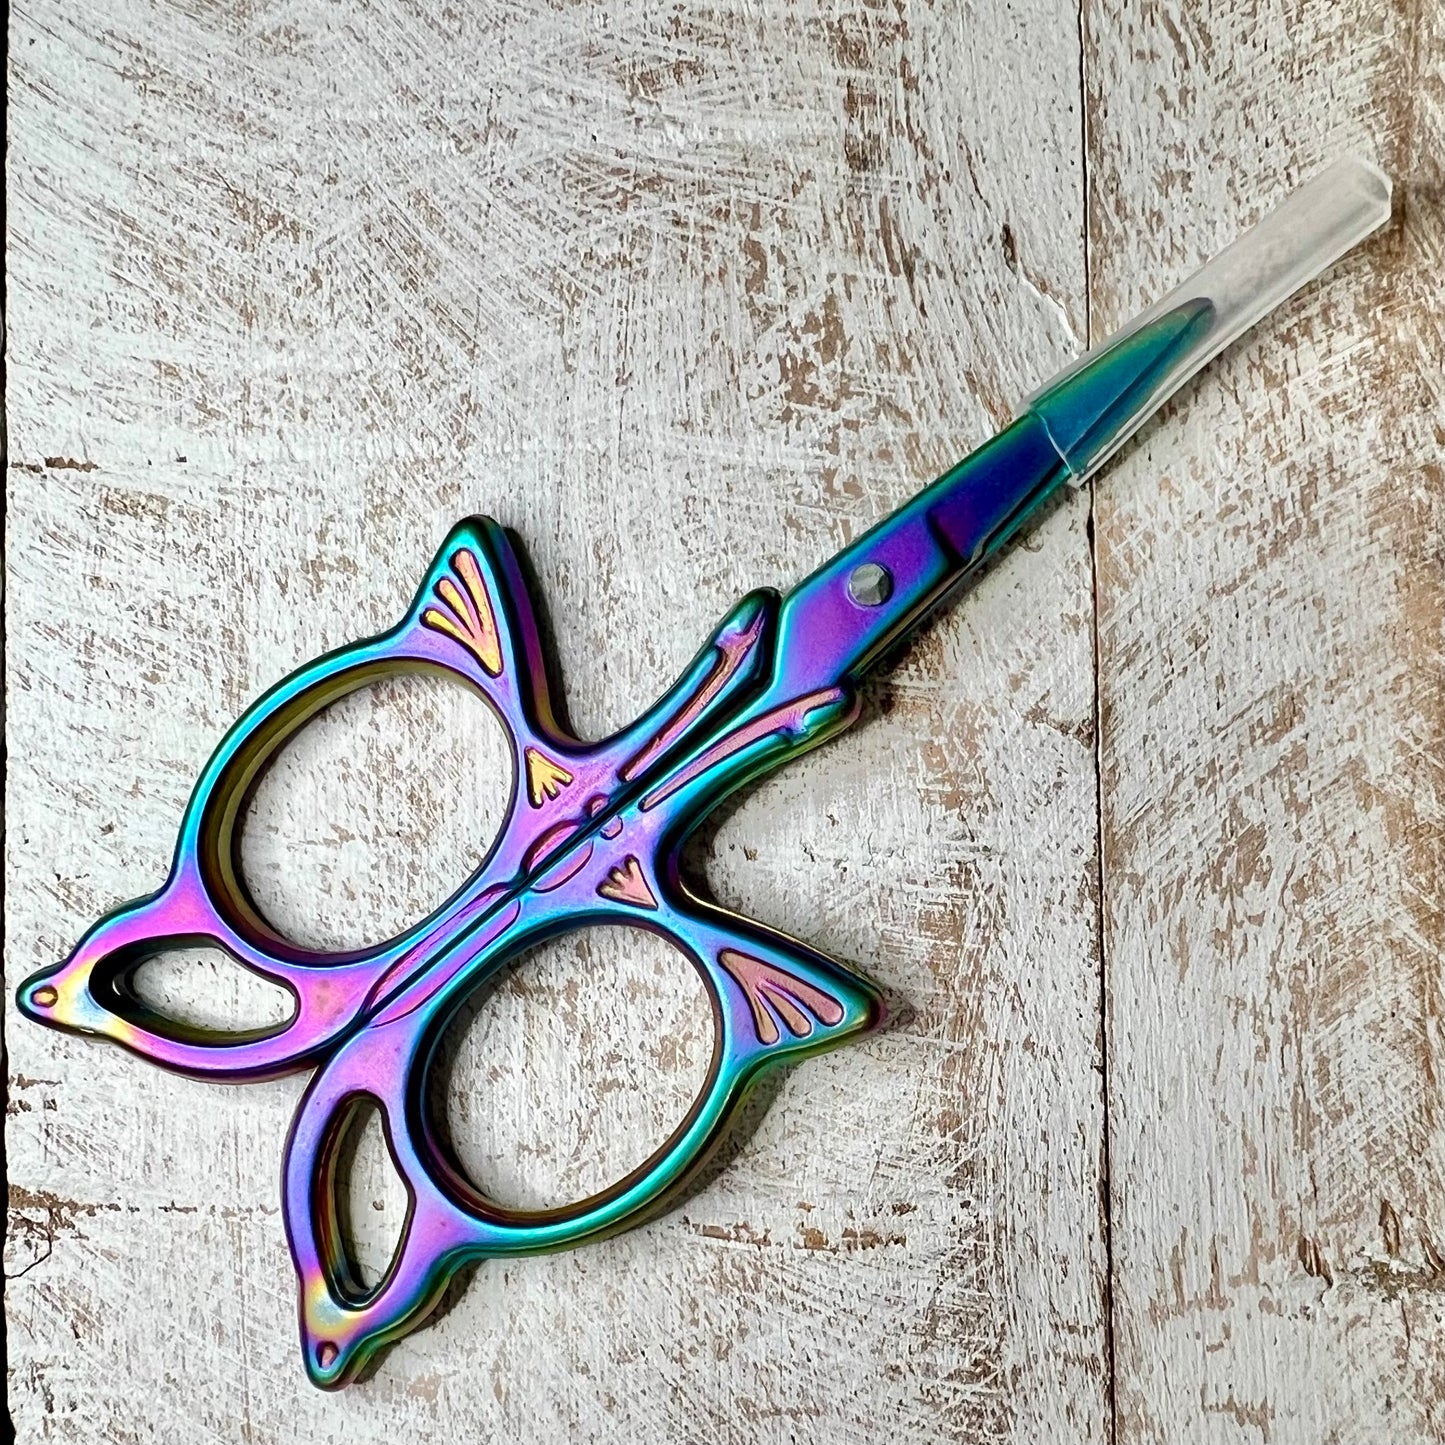 DGY Scissors